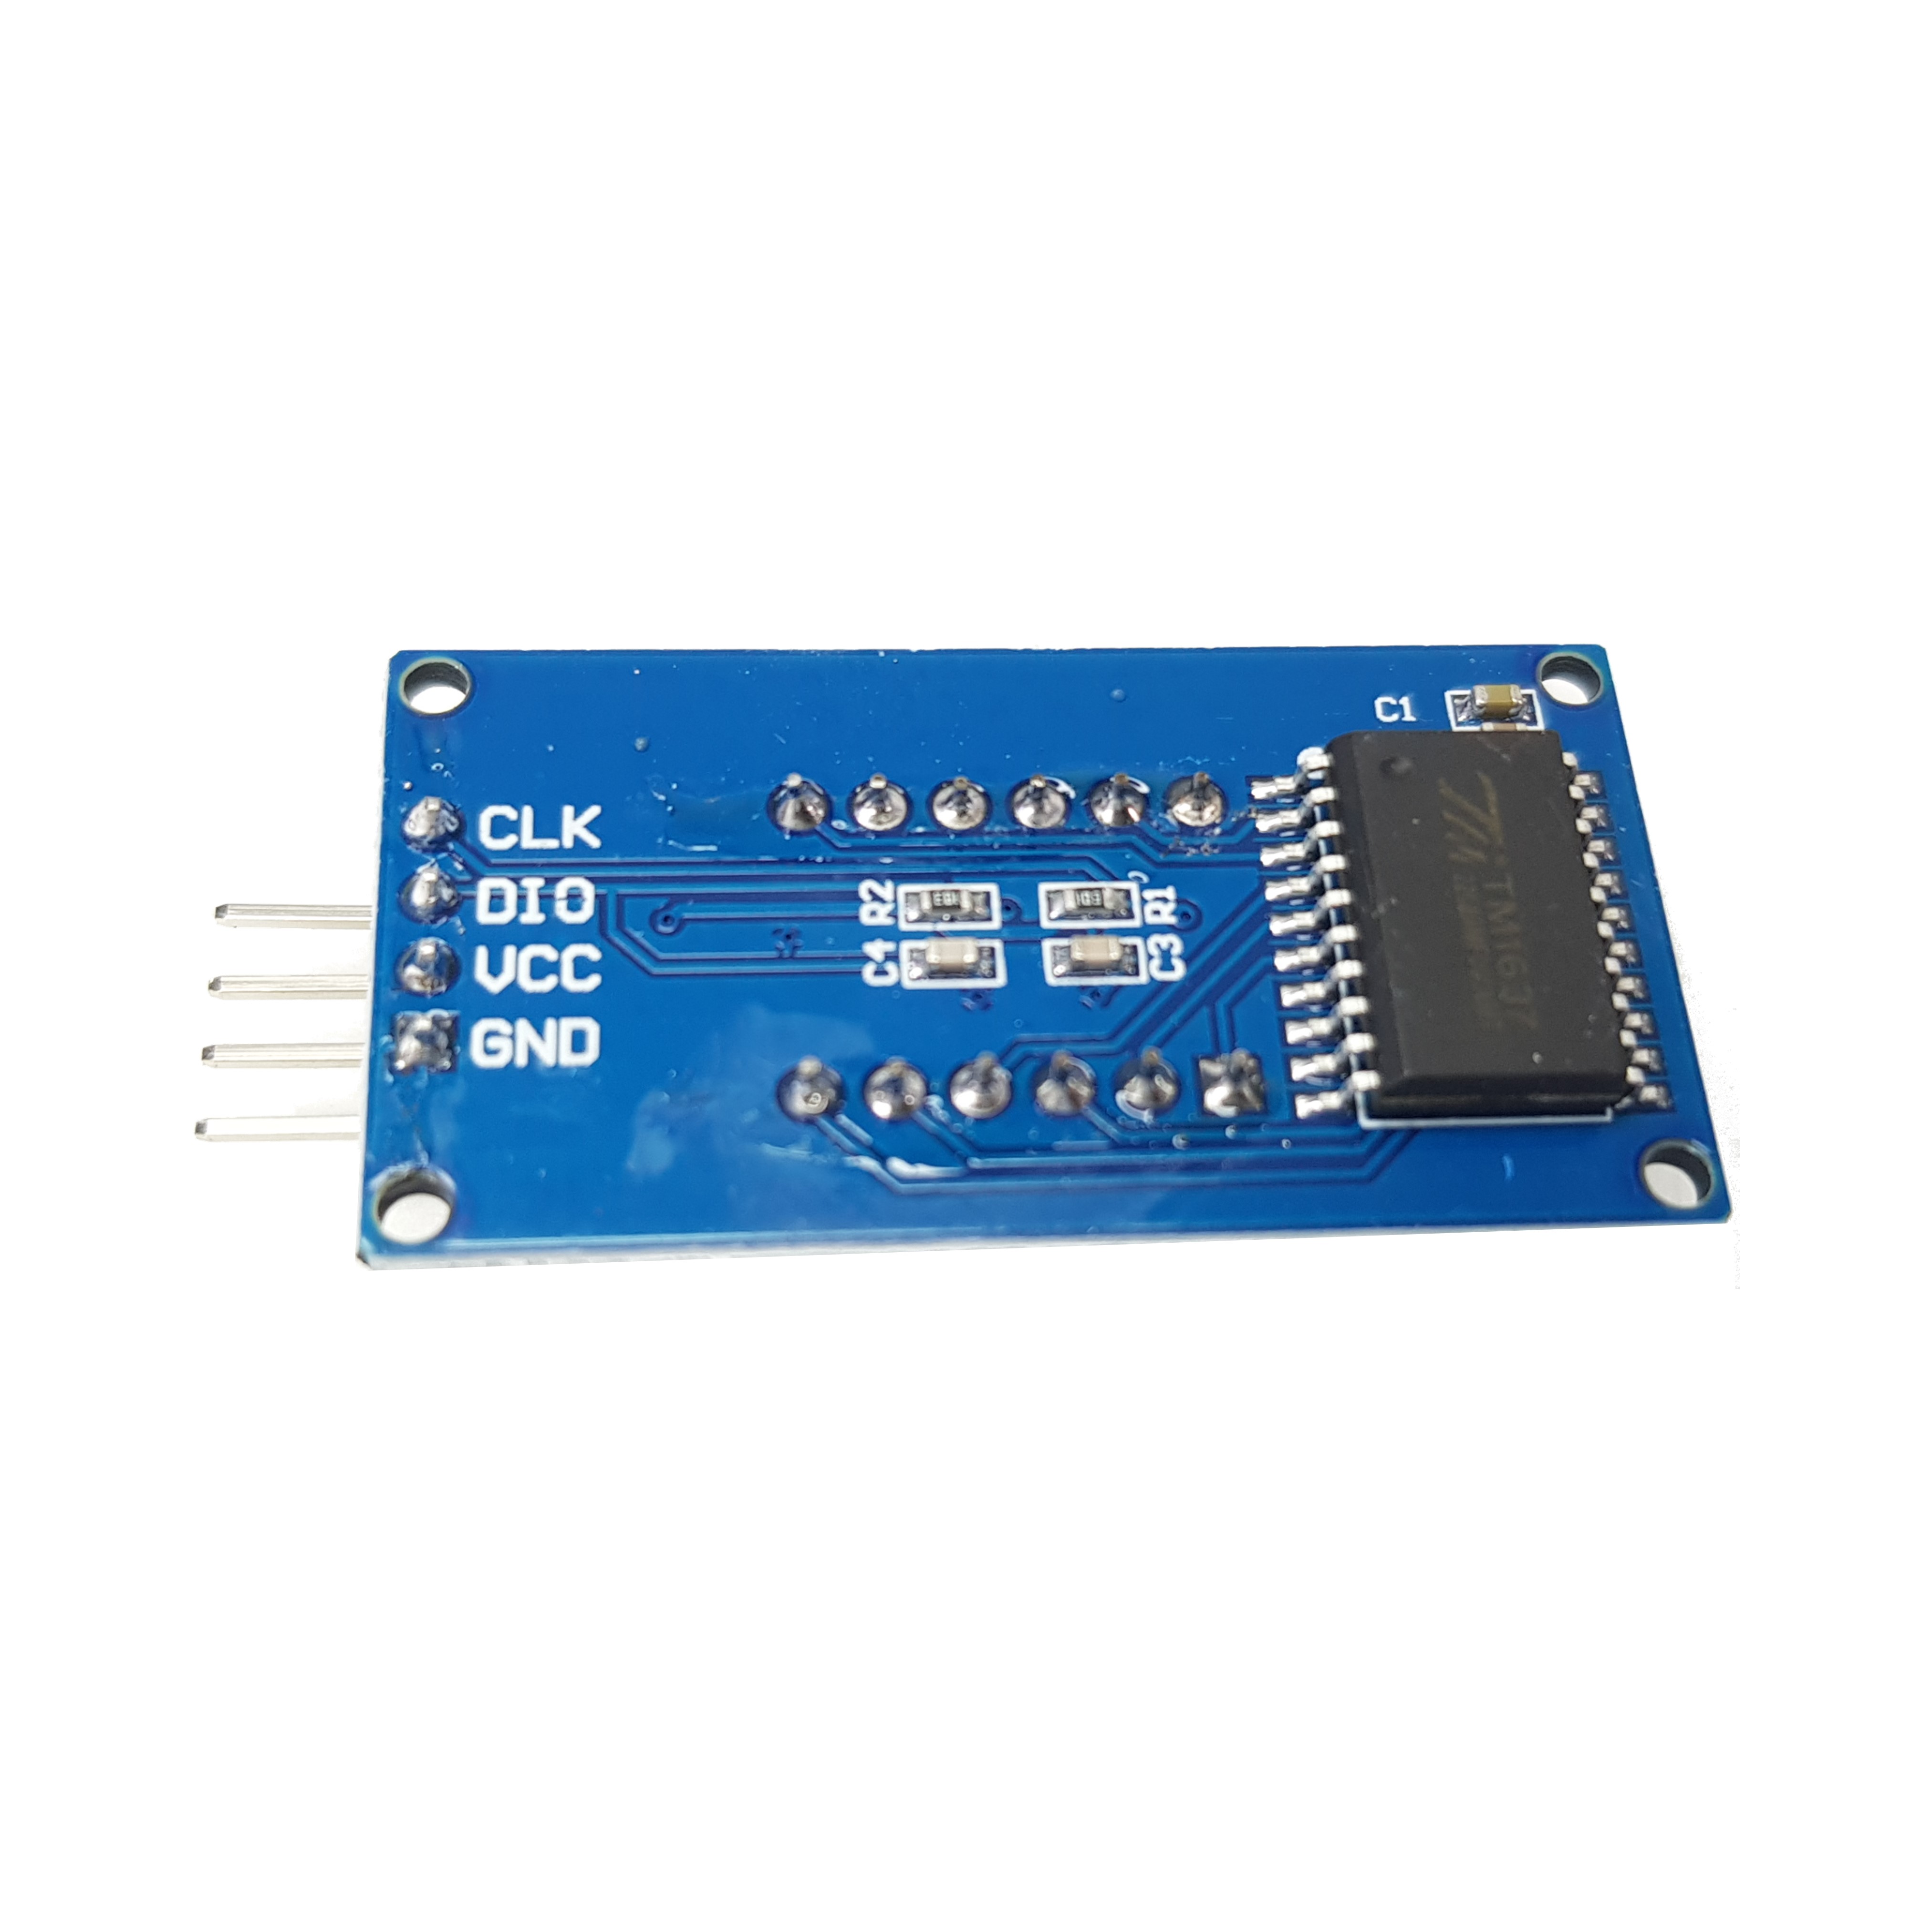 4-digit 7-segment Display LED TM1637 with colon for Arduino, ESP32, ESP8266, Raspberry Pi, 2 pieces